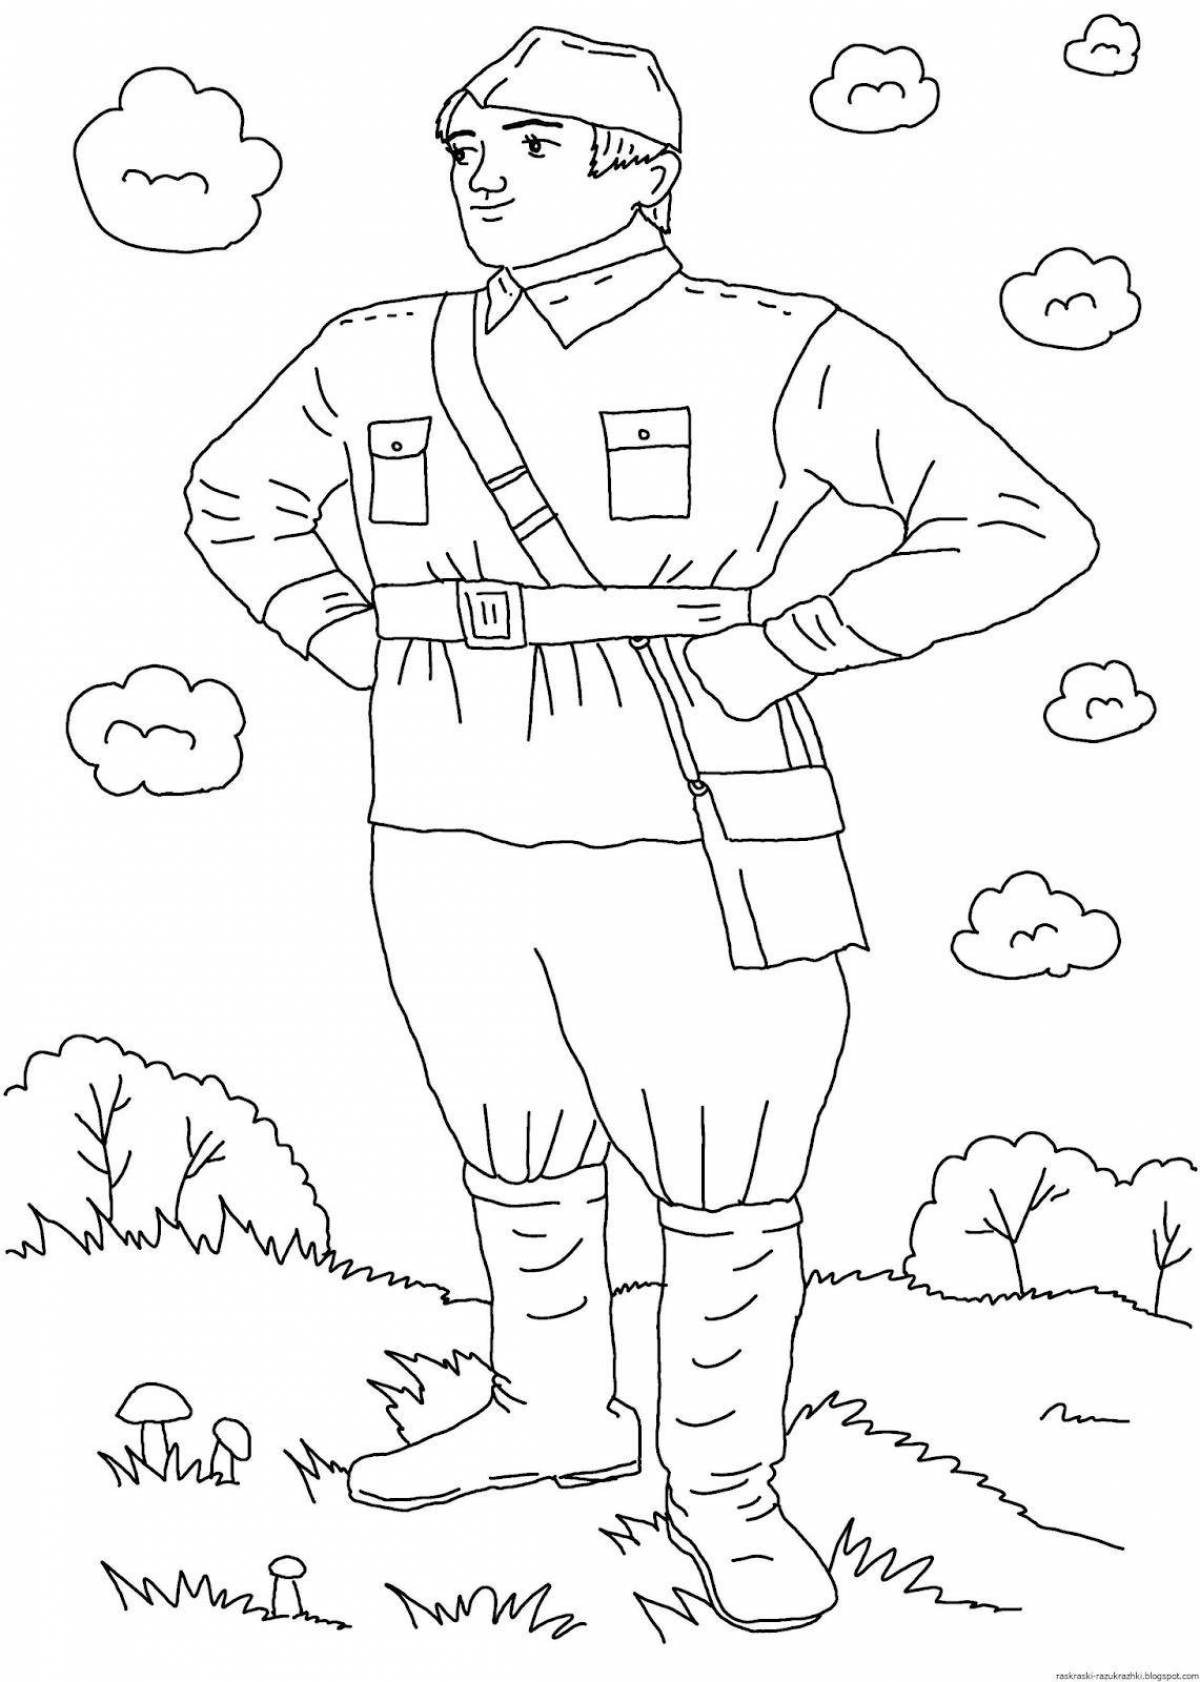 Веселая раскраска рисунок солдата от школьника